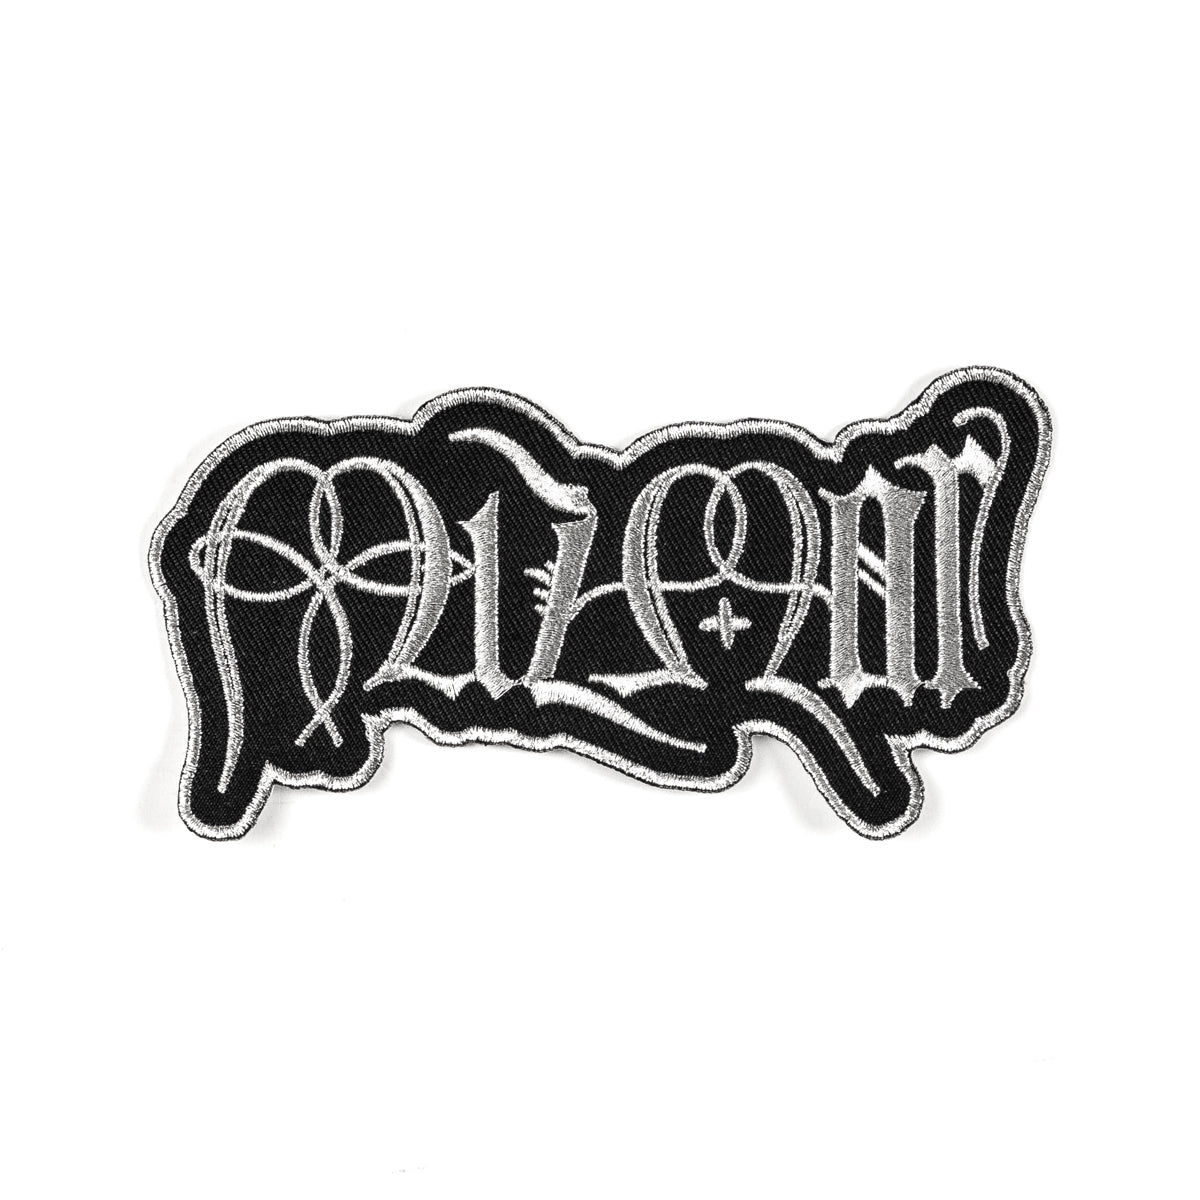 MIZMOR "Logo - Romanized" Patch